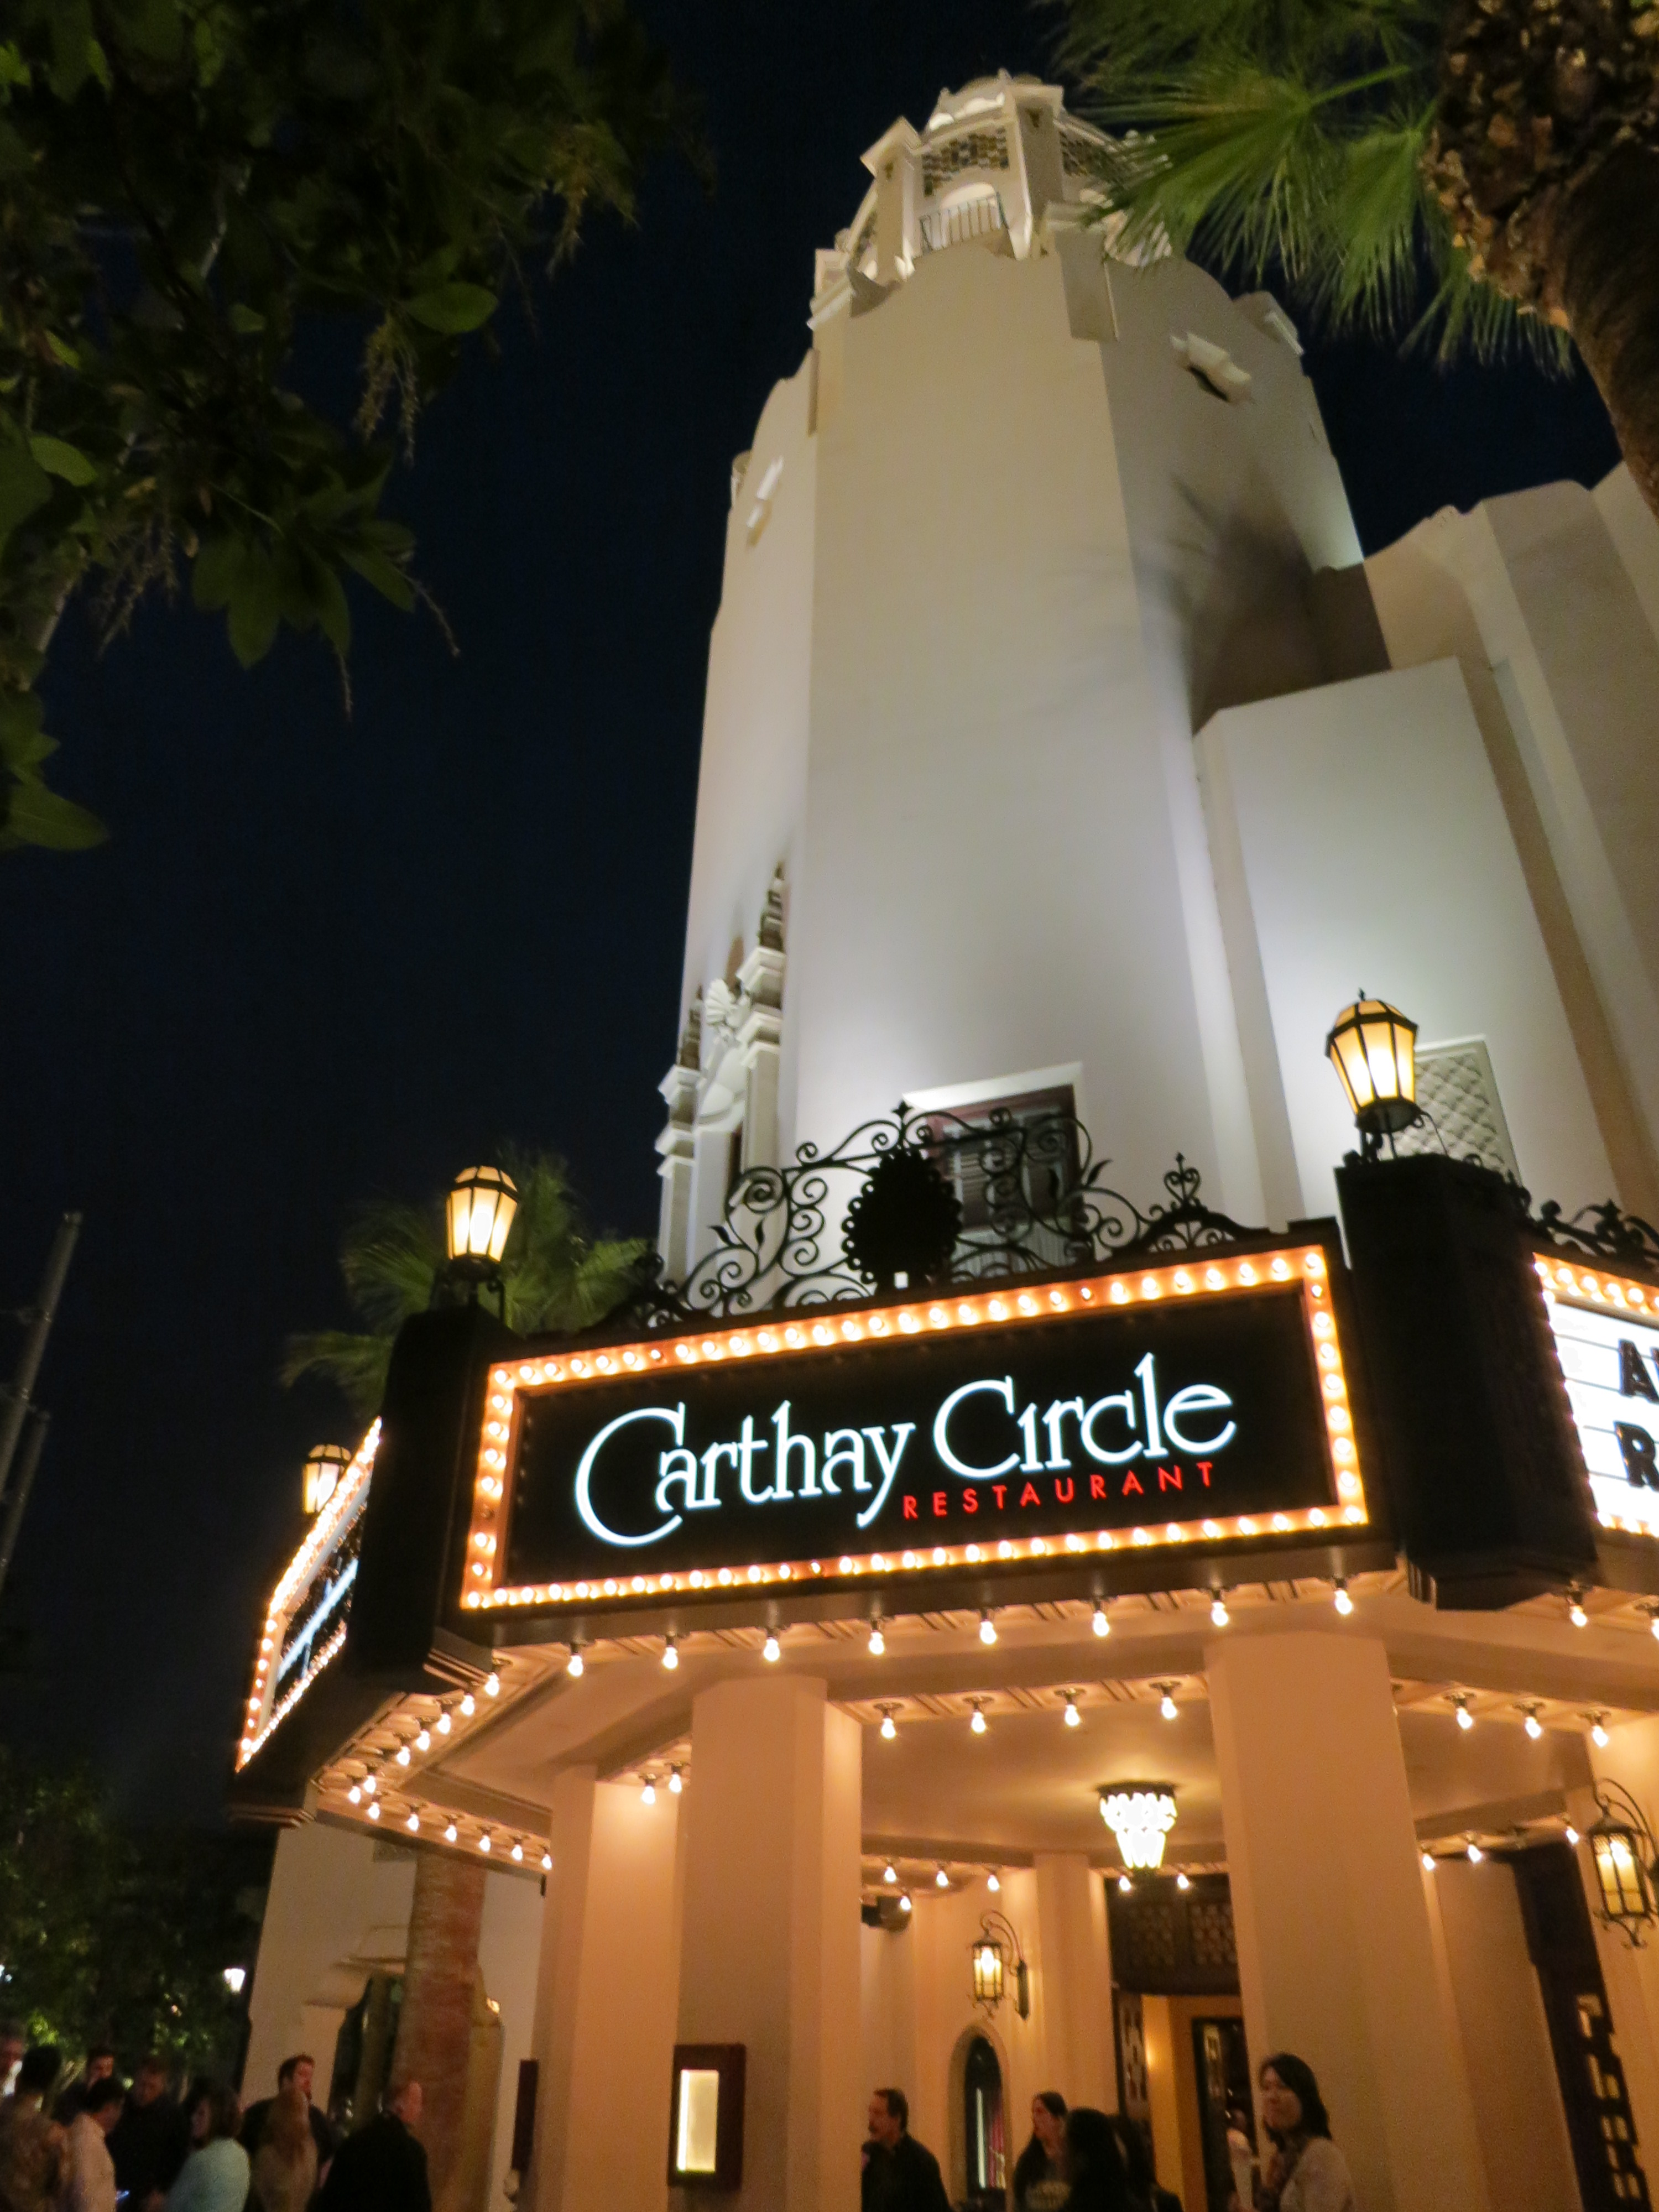 ディズニー カリフォルニアアドベンチャーパークのカーセイ サークル シアターでディナーとショーを楽しむ Carthay Circle Restaurant